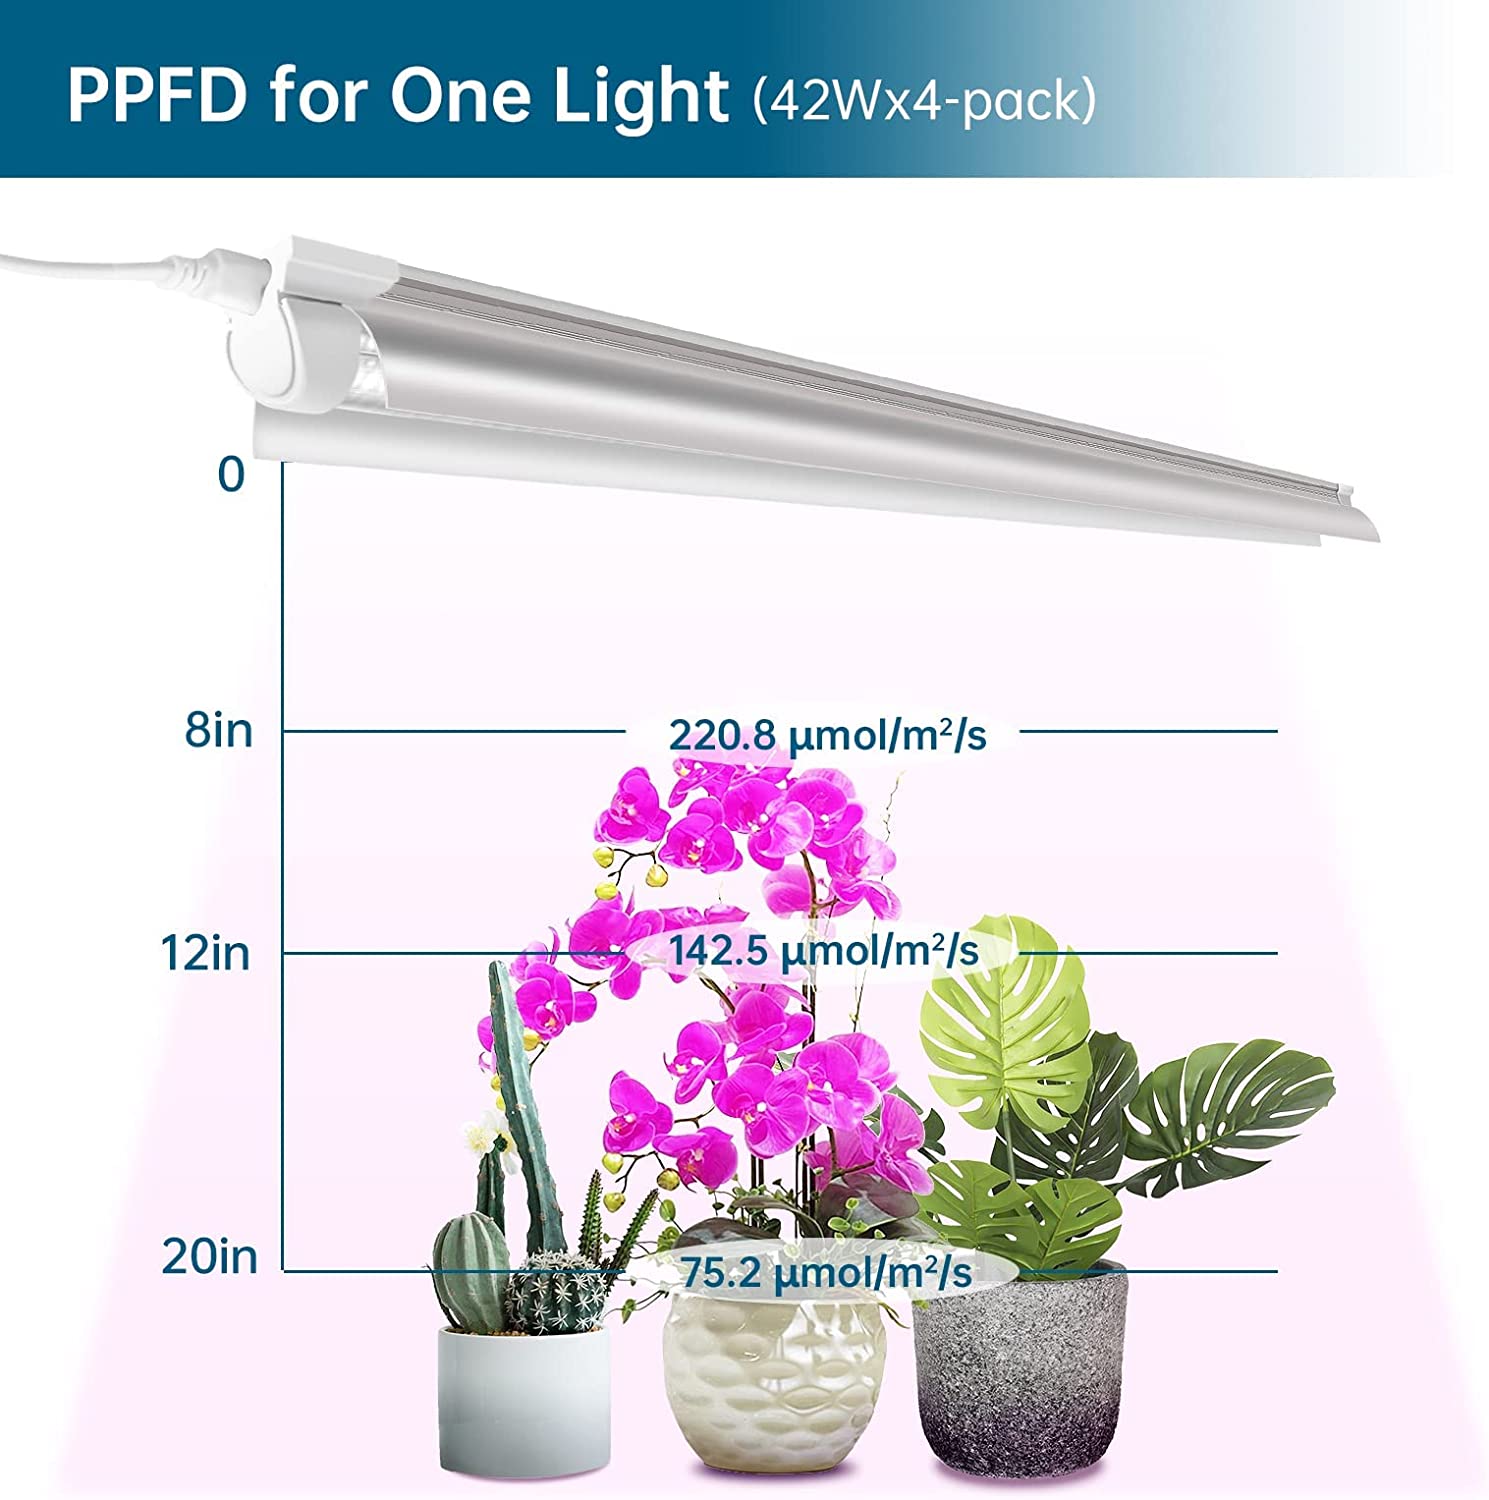 T8 LED Grow Light,4FT,42W,Pinkish White,Full Spectrum,Linkable,Reflector Design,4 Packs,QL42(FB) - Barrina led